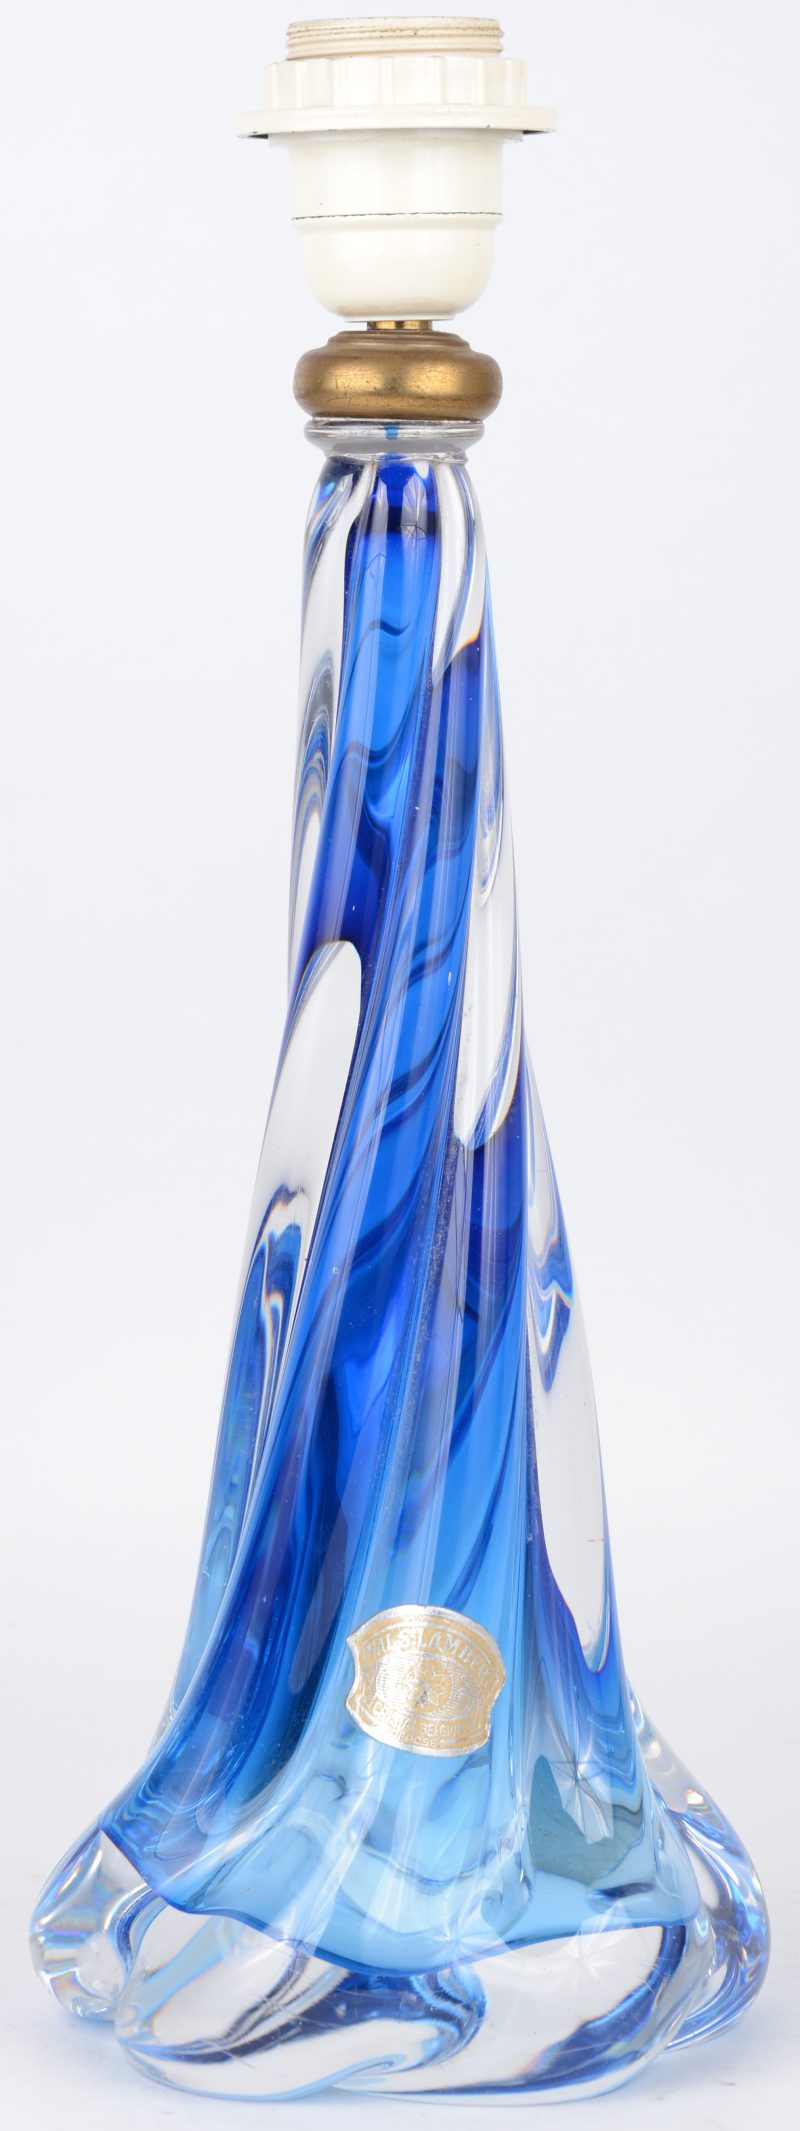 Een lampenvoet van blauw kristal.